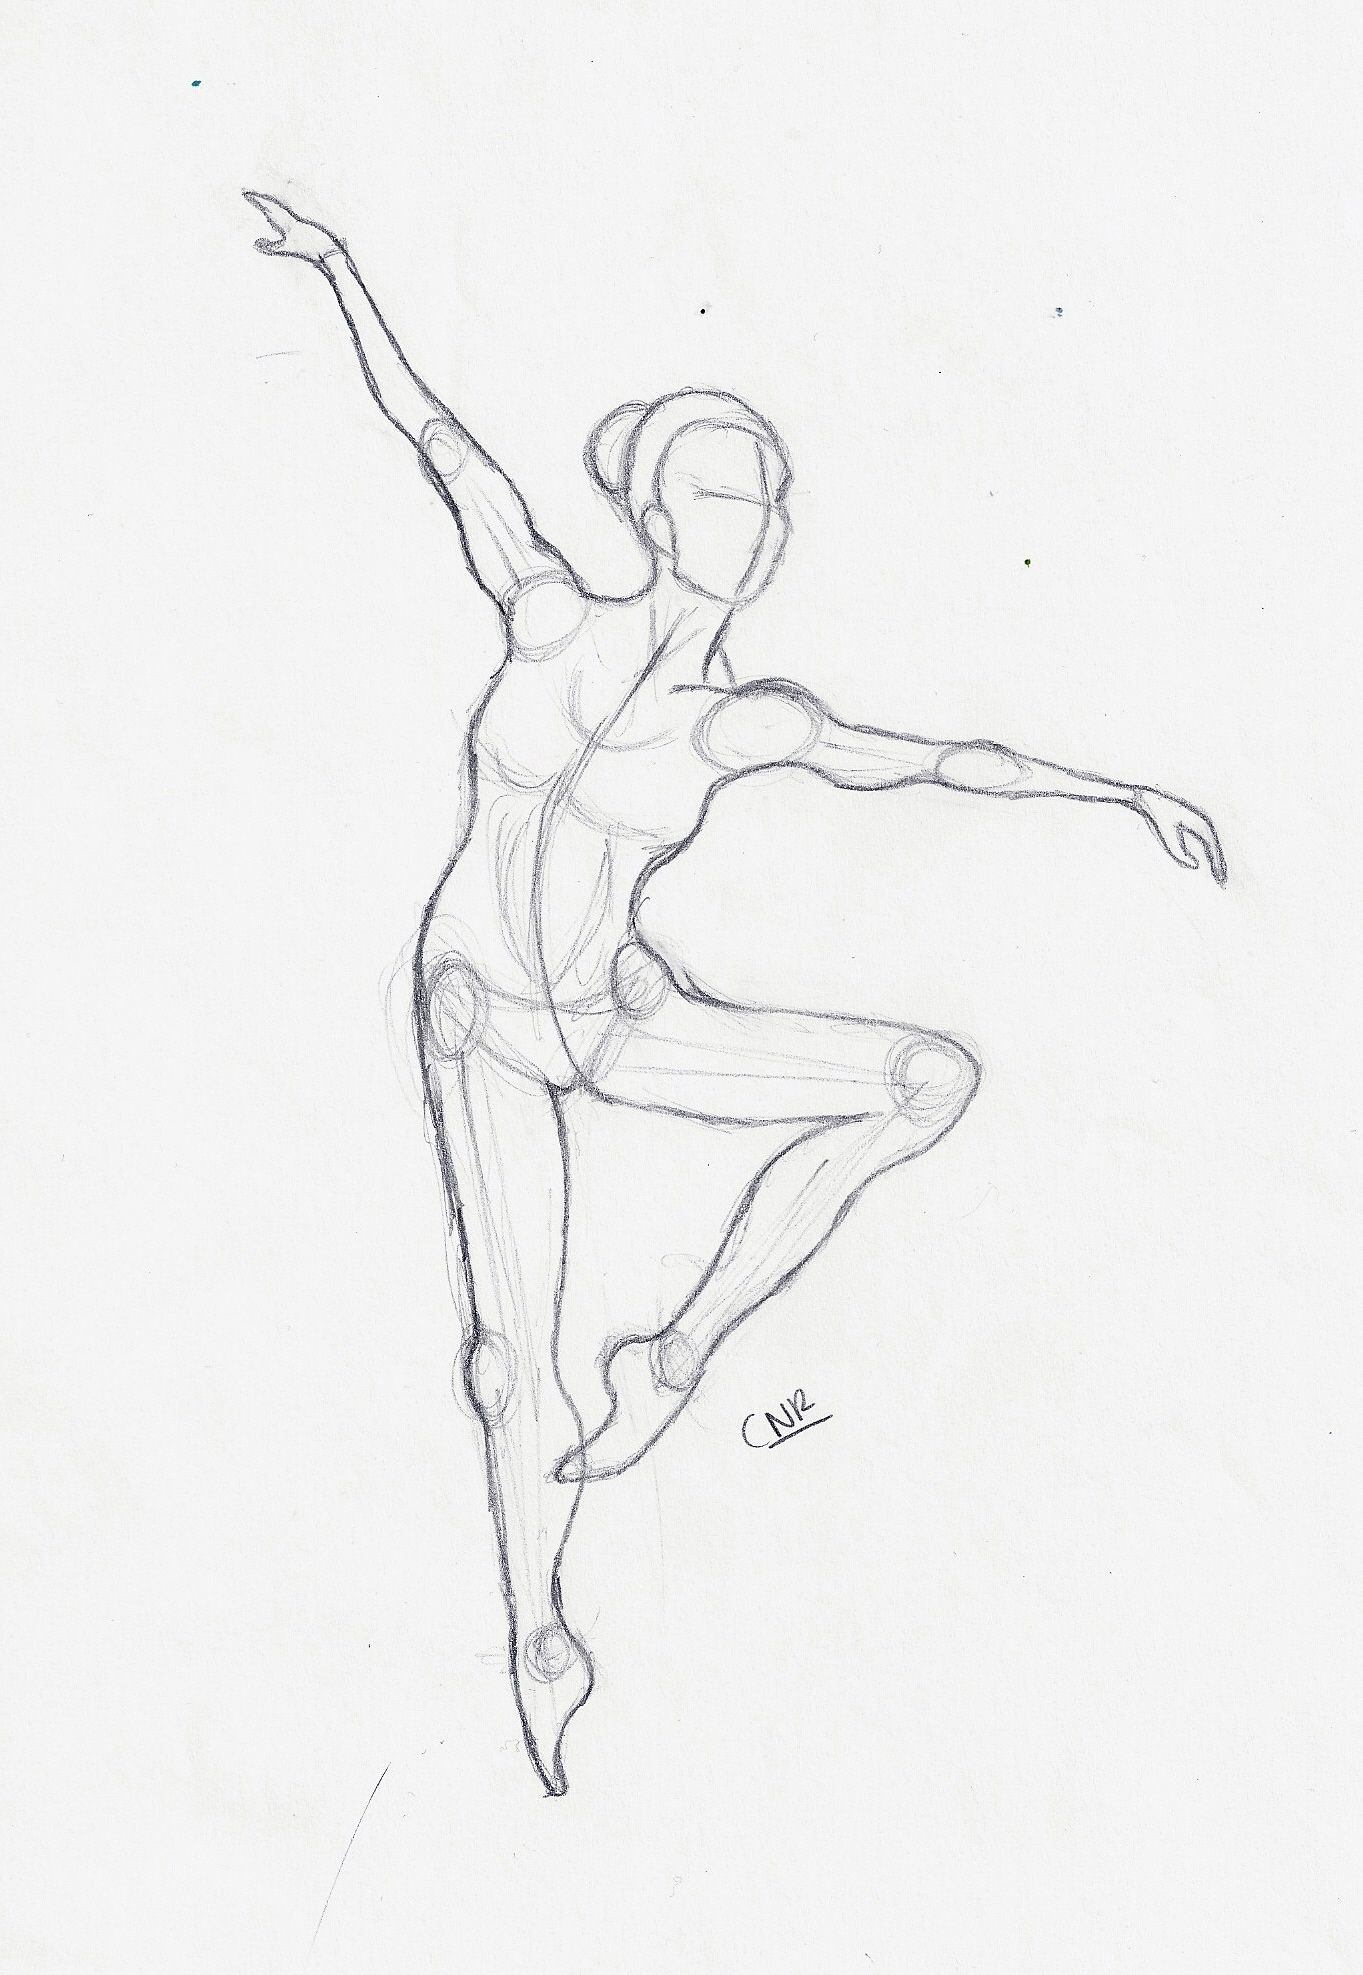 Изобразить человека в движении. Фигура человека в движении. Зарисовки людей в движении. Рисование человека в движении. Наброски фигуры человека в движении.